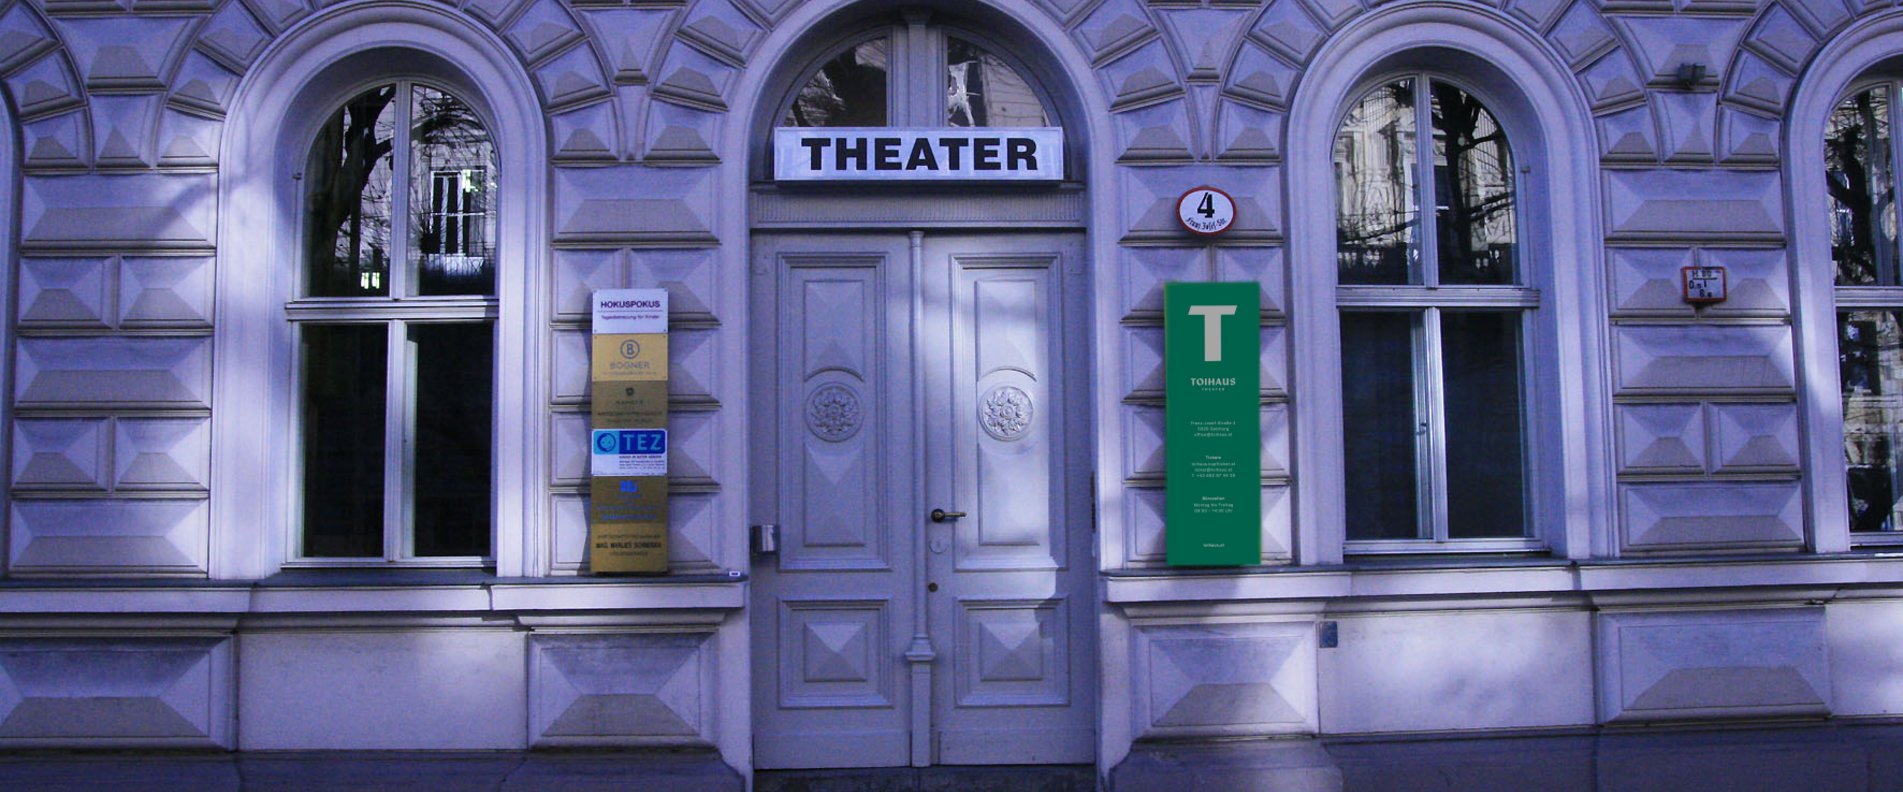 Toihaus Theater | © Toihaus Theater